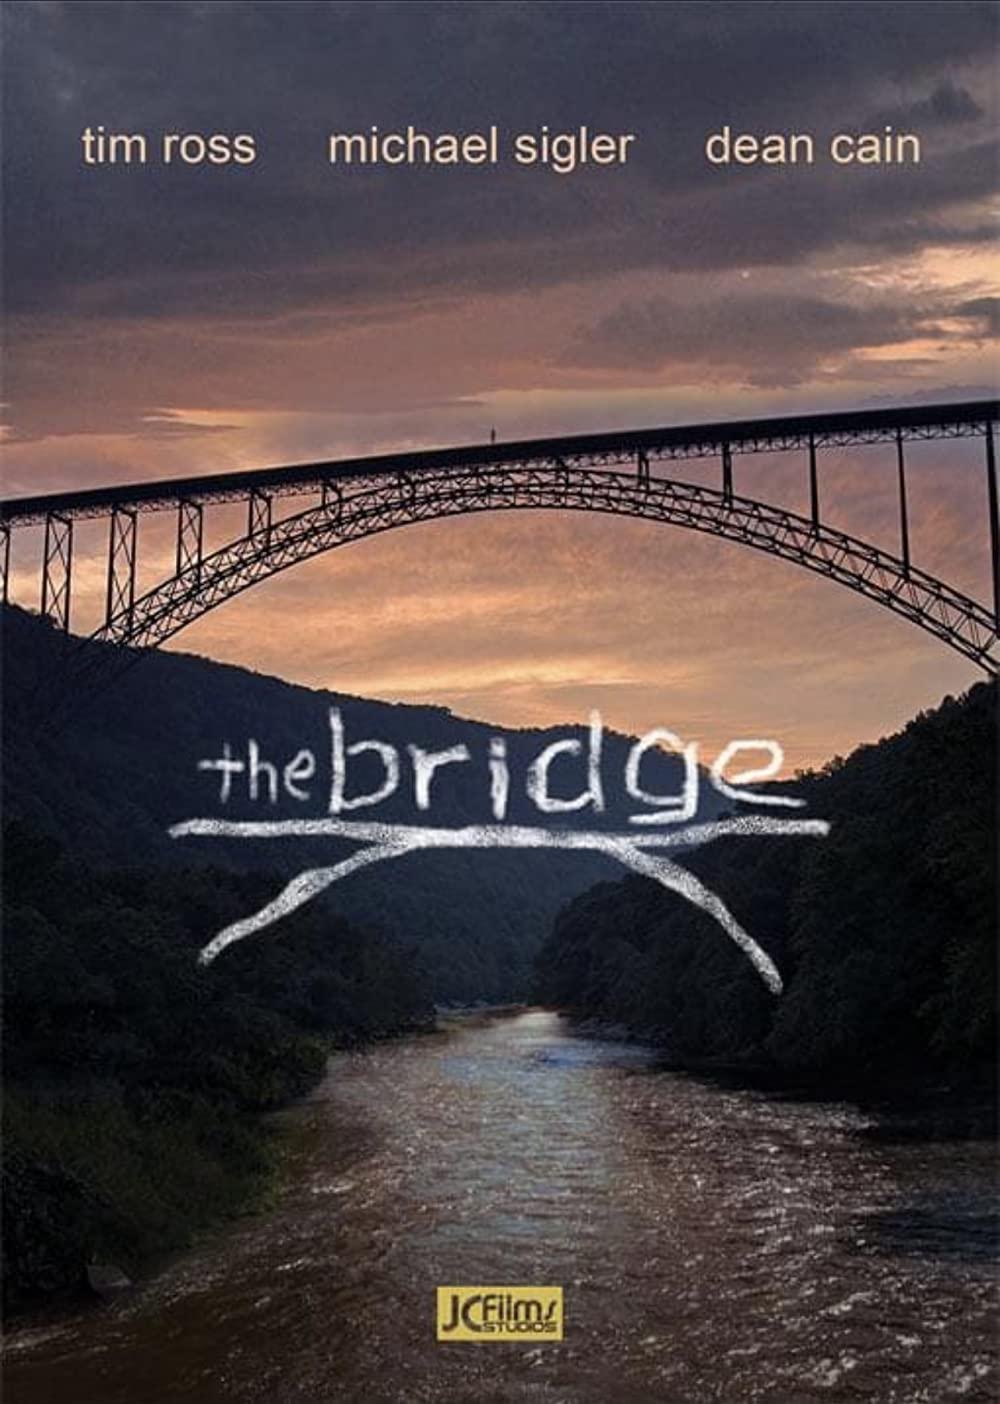 The Bridge Movie Review 1680648496303